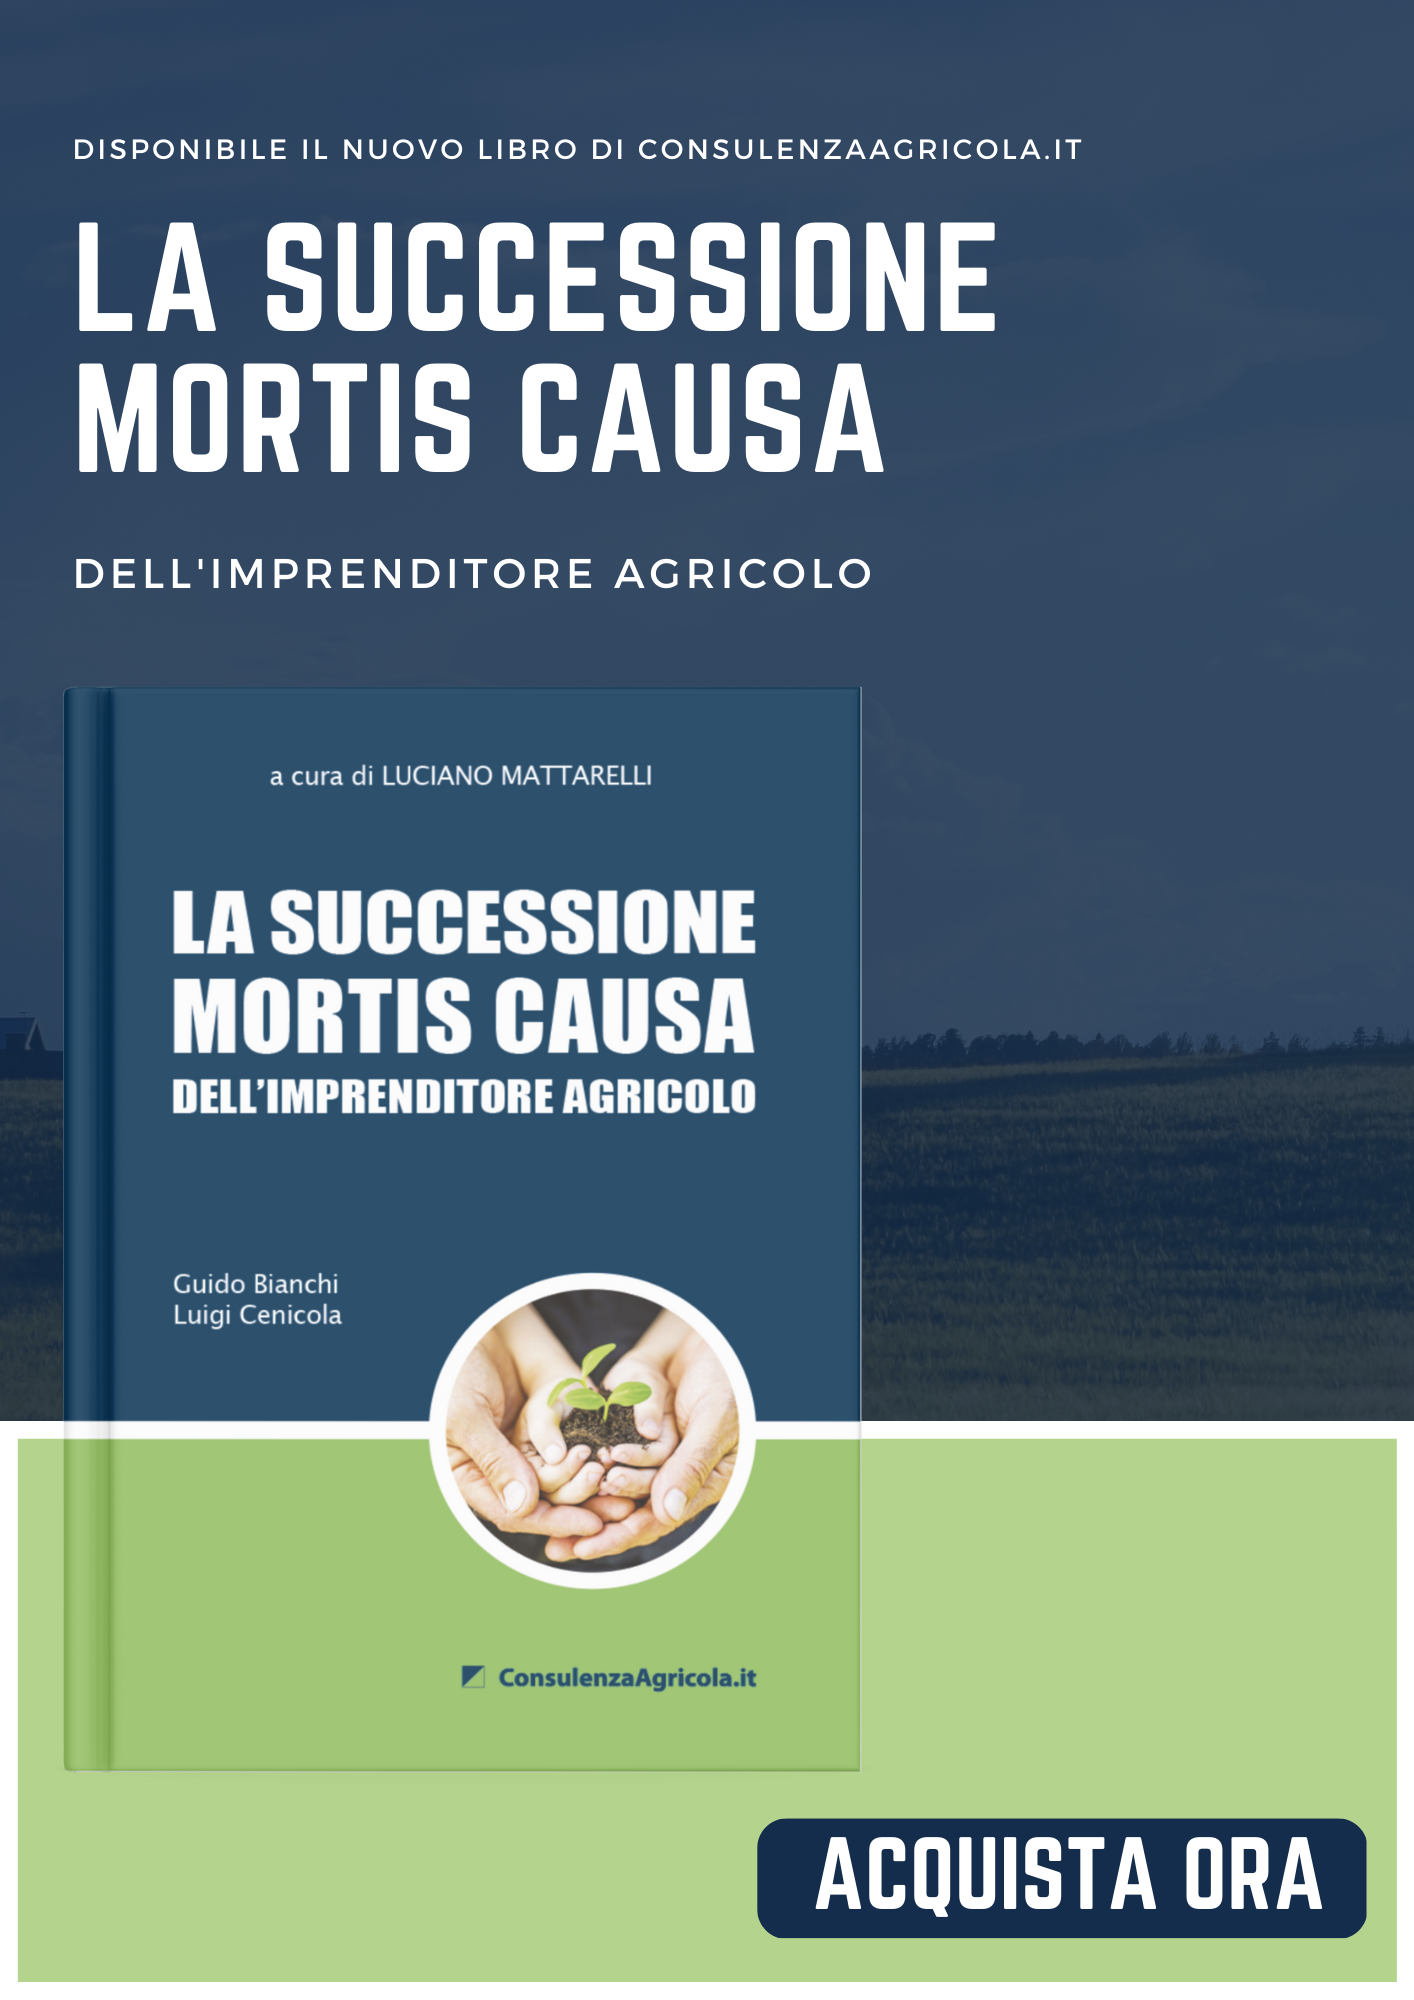 banner-mobile-la-successione Editoria | ConsulenzaAgricola.it